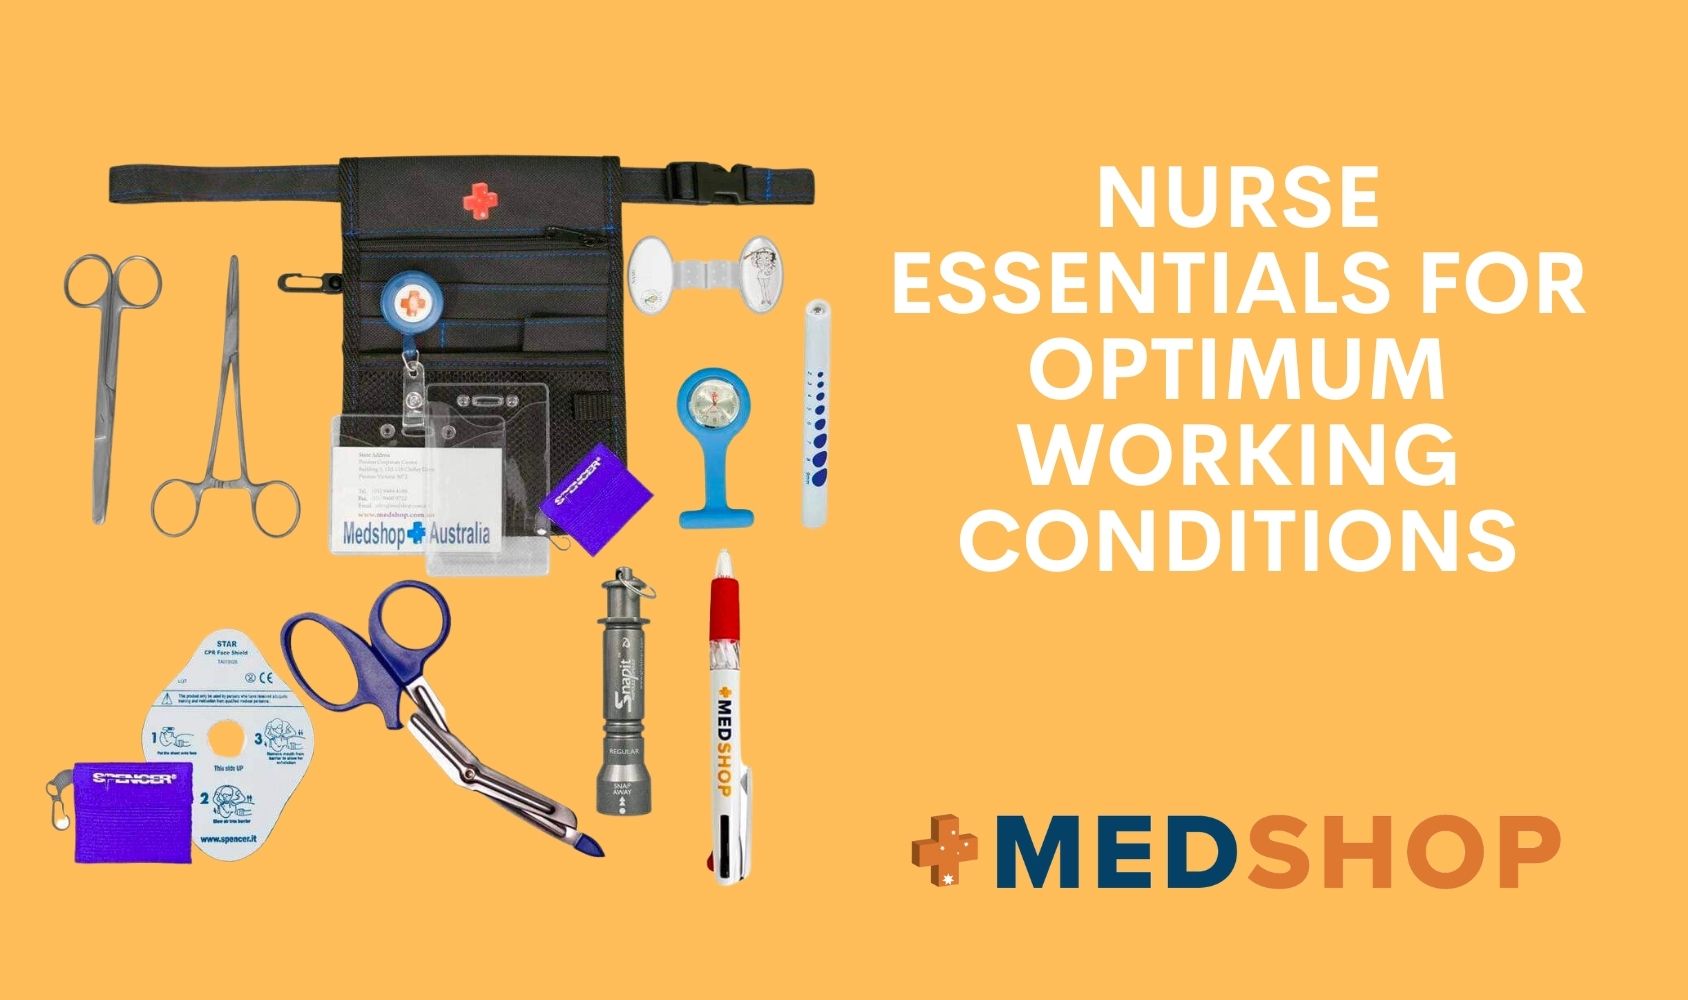 Nurse Essentials for Optimum Working Conditions